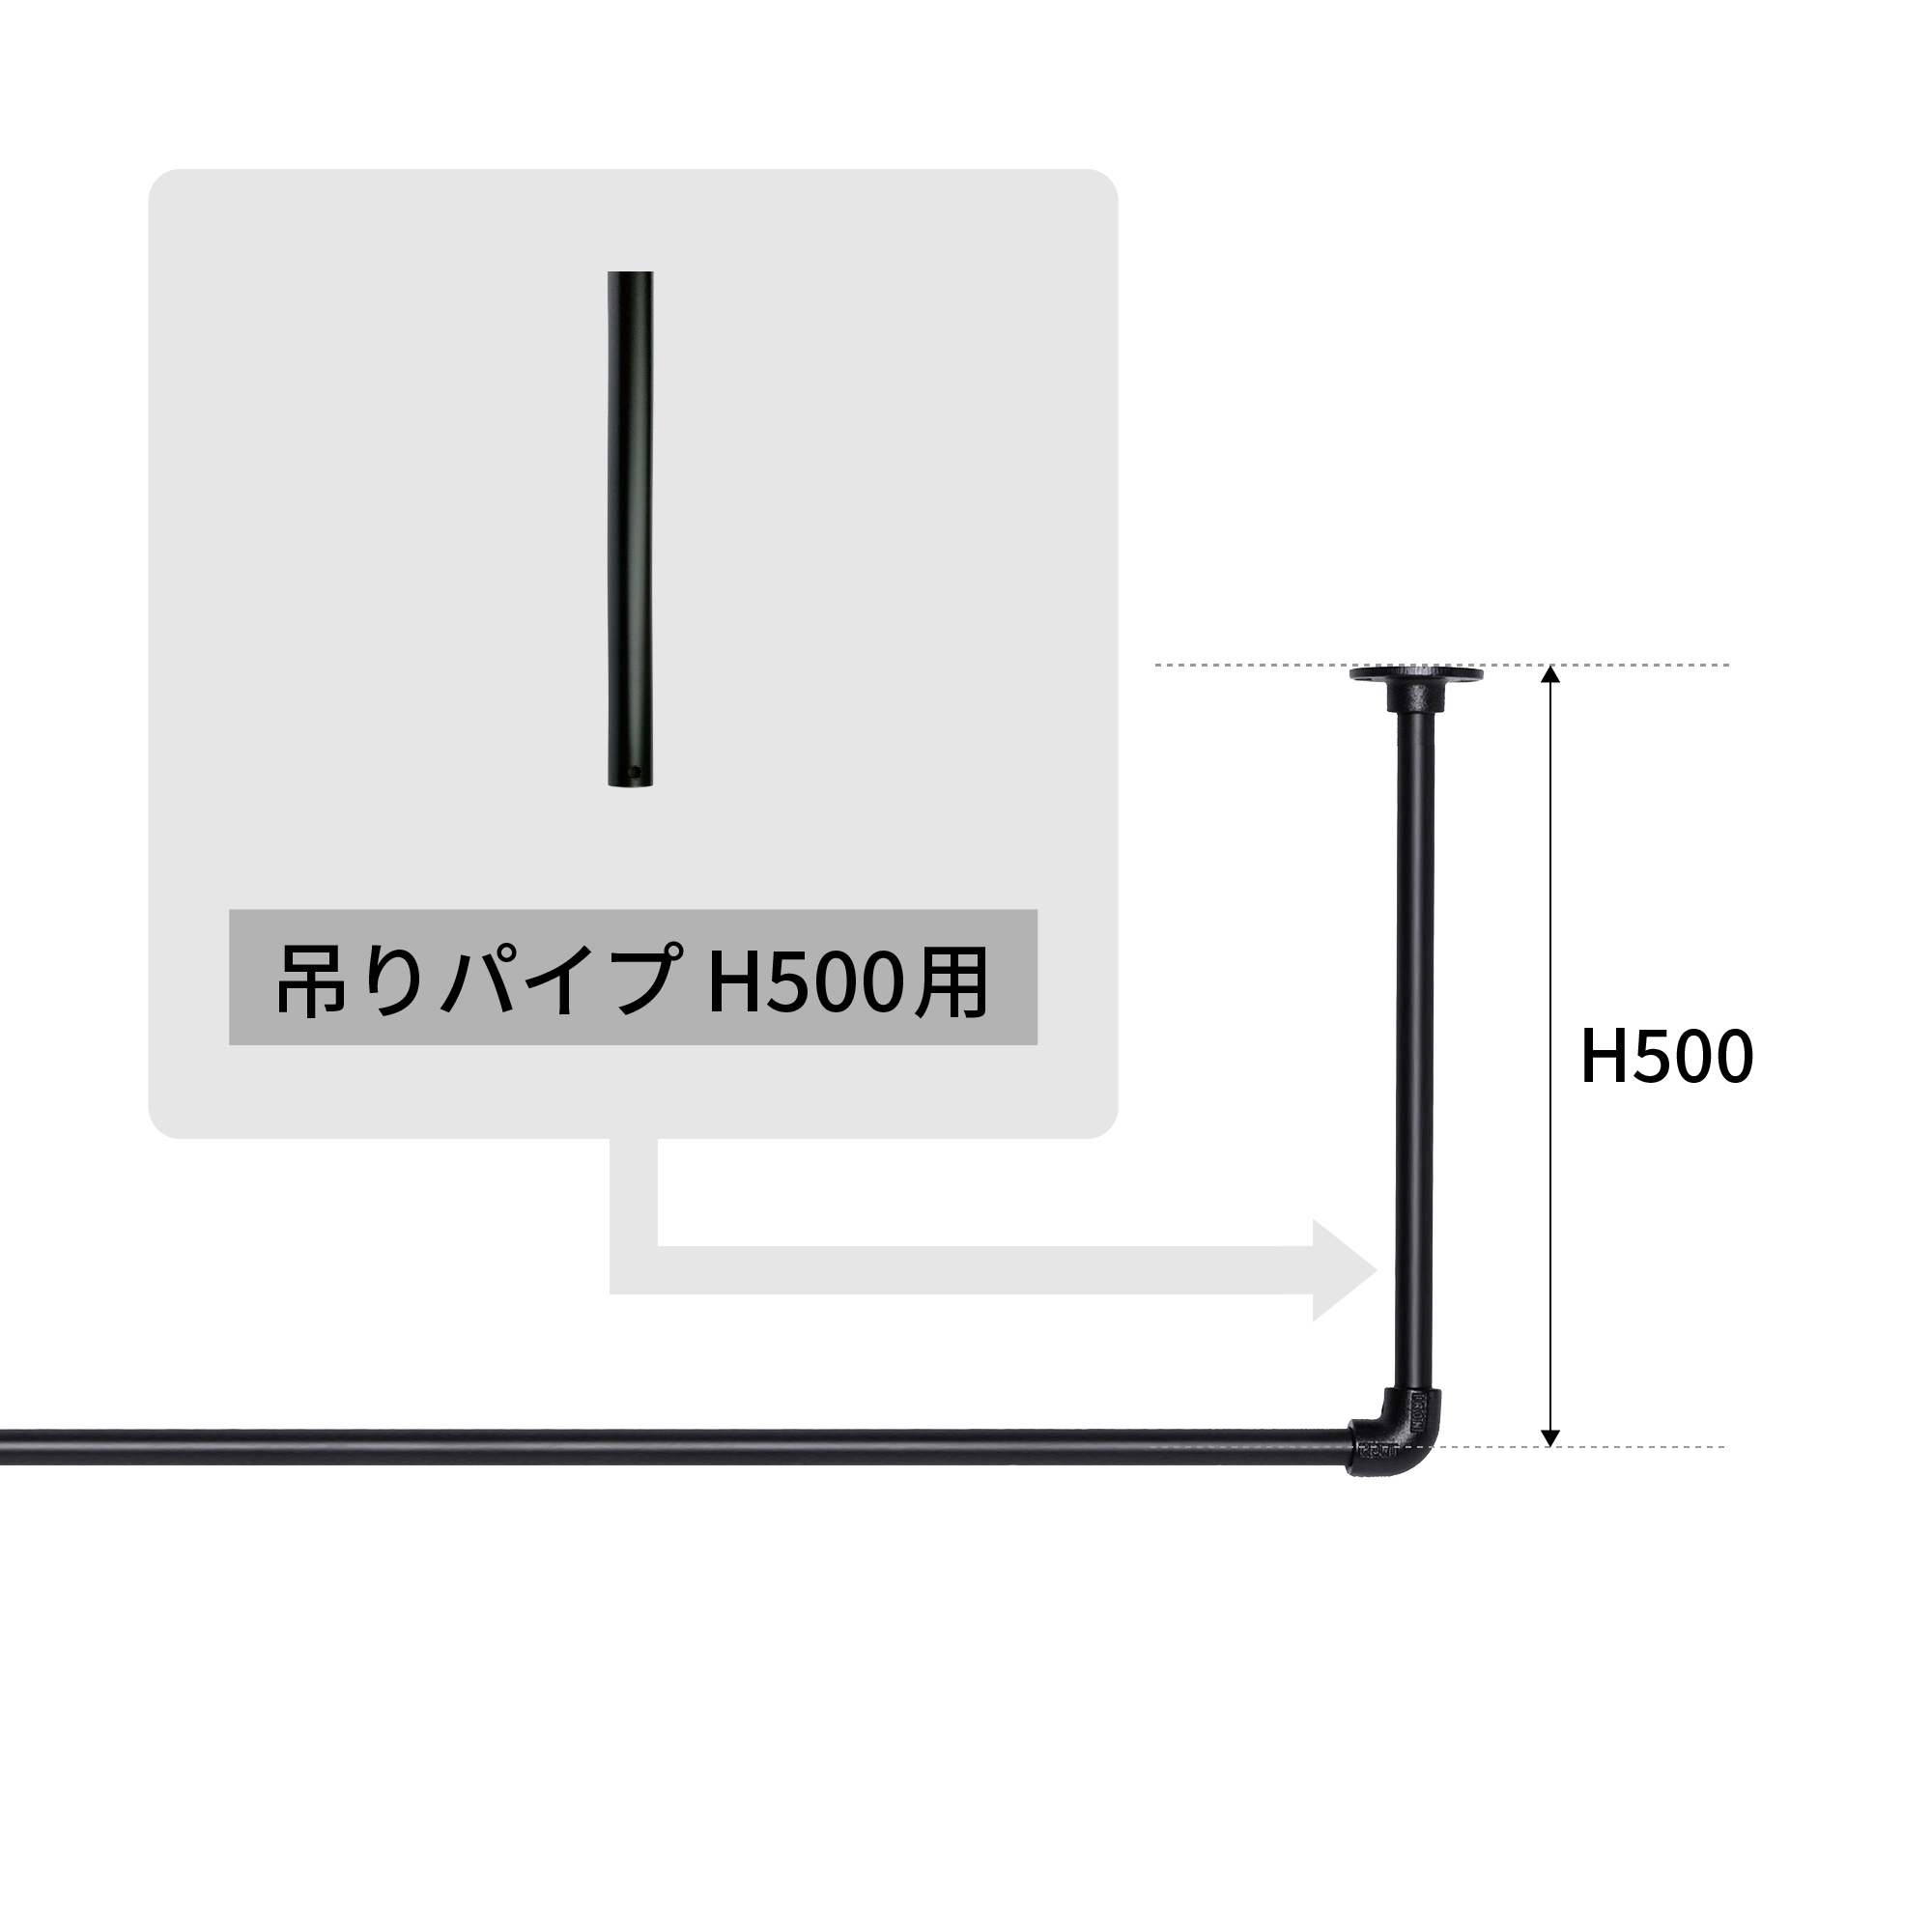 アイアンハンガーパイプ 吊りパイプ H500用 ブラック PS-HB008-31-G141